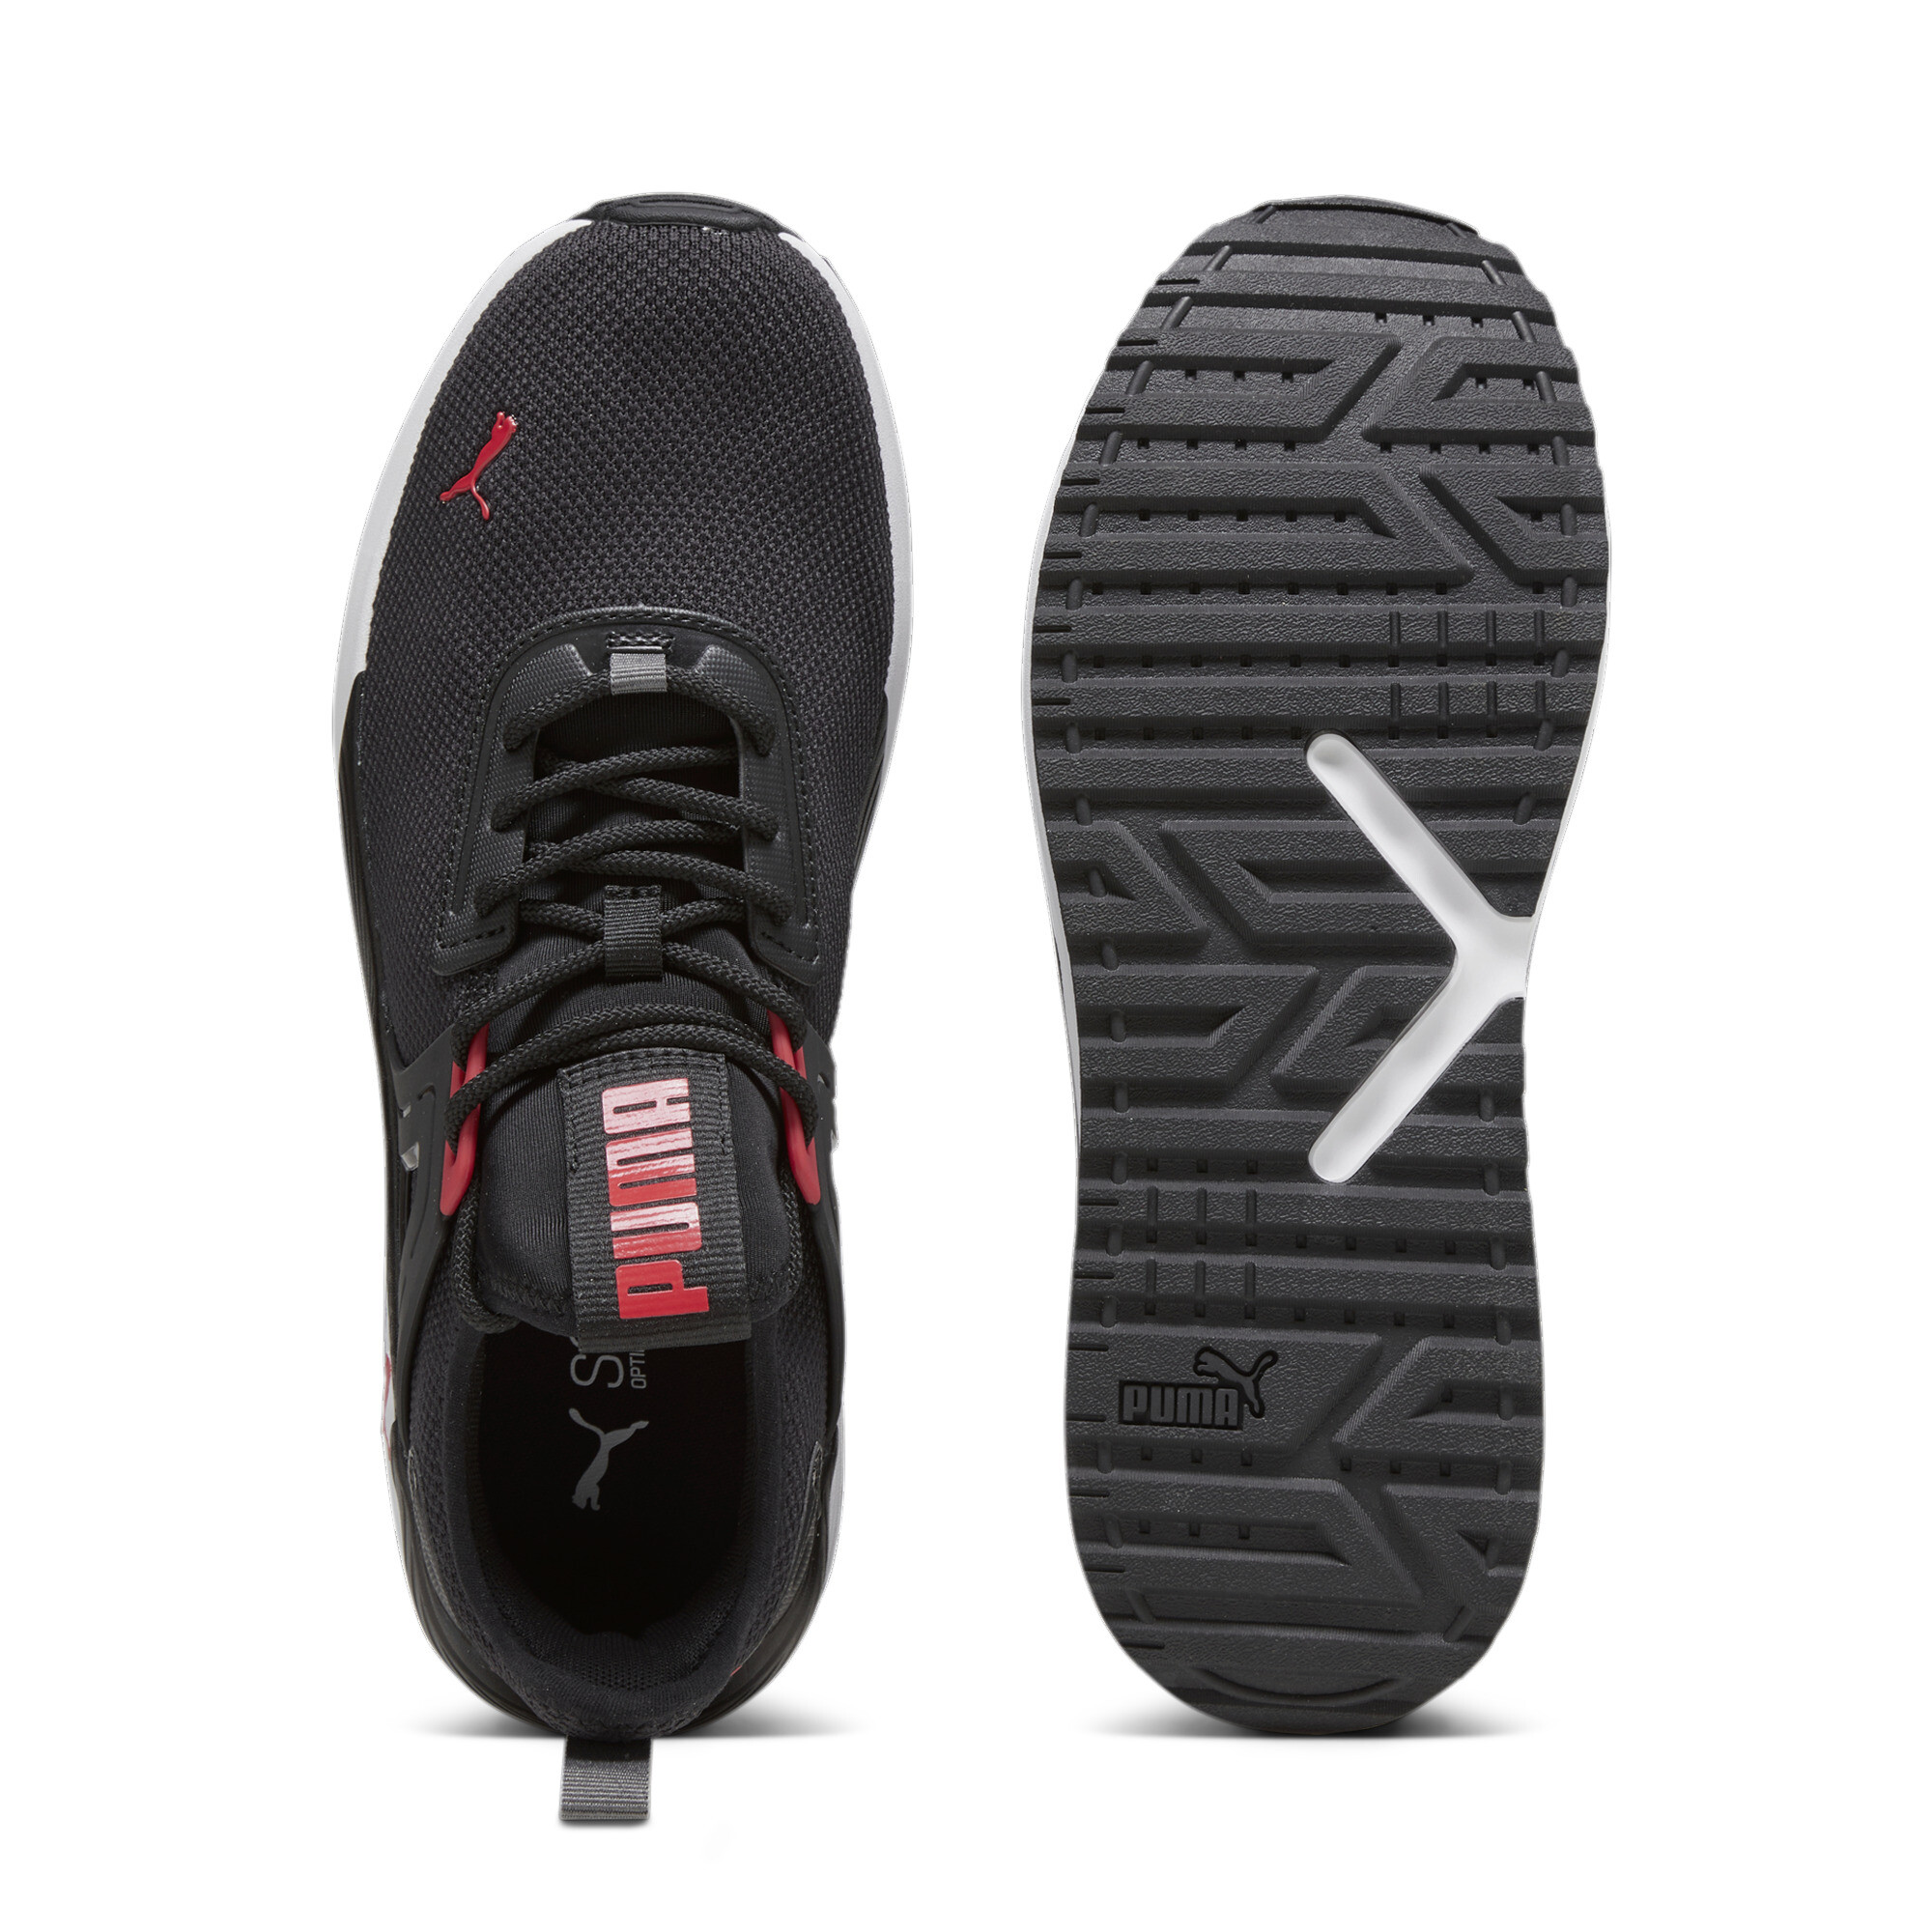 Men's PUMA Pacer 23 Sneakers In 10 - Black, Size EU 43